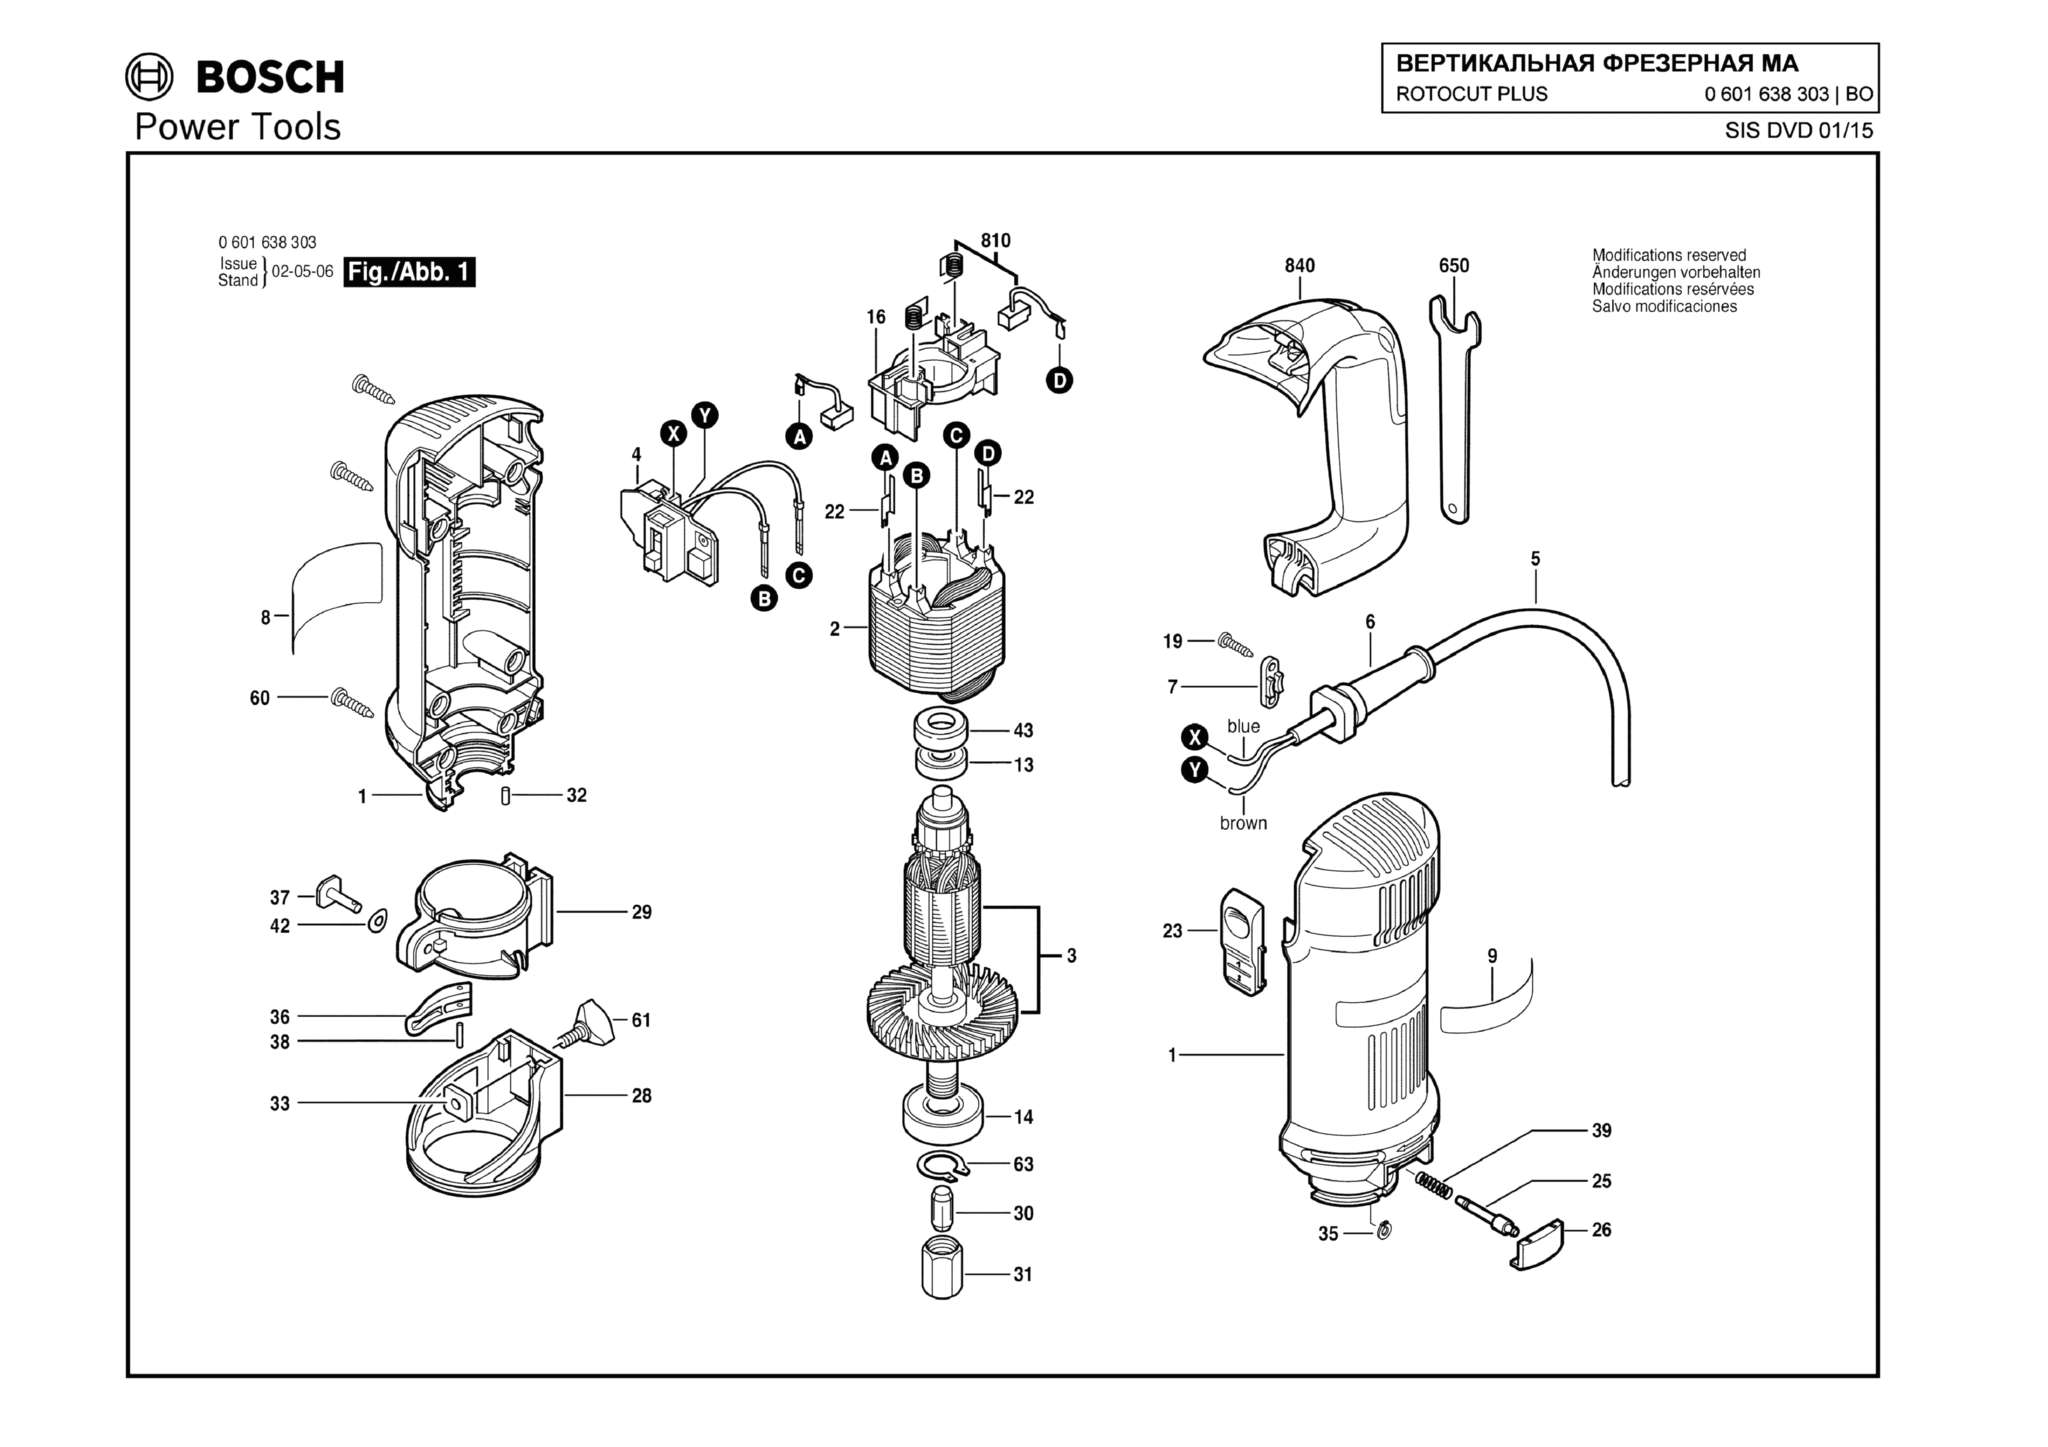 Запчасти, схема и деталировка Bosch ROTOCUT PLUS (ТИП 0601638303)